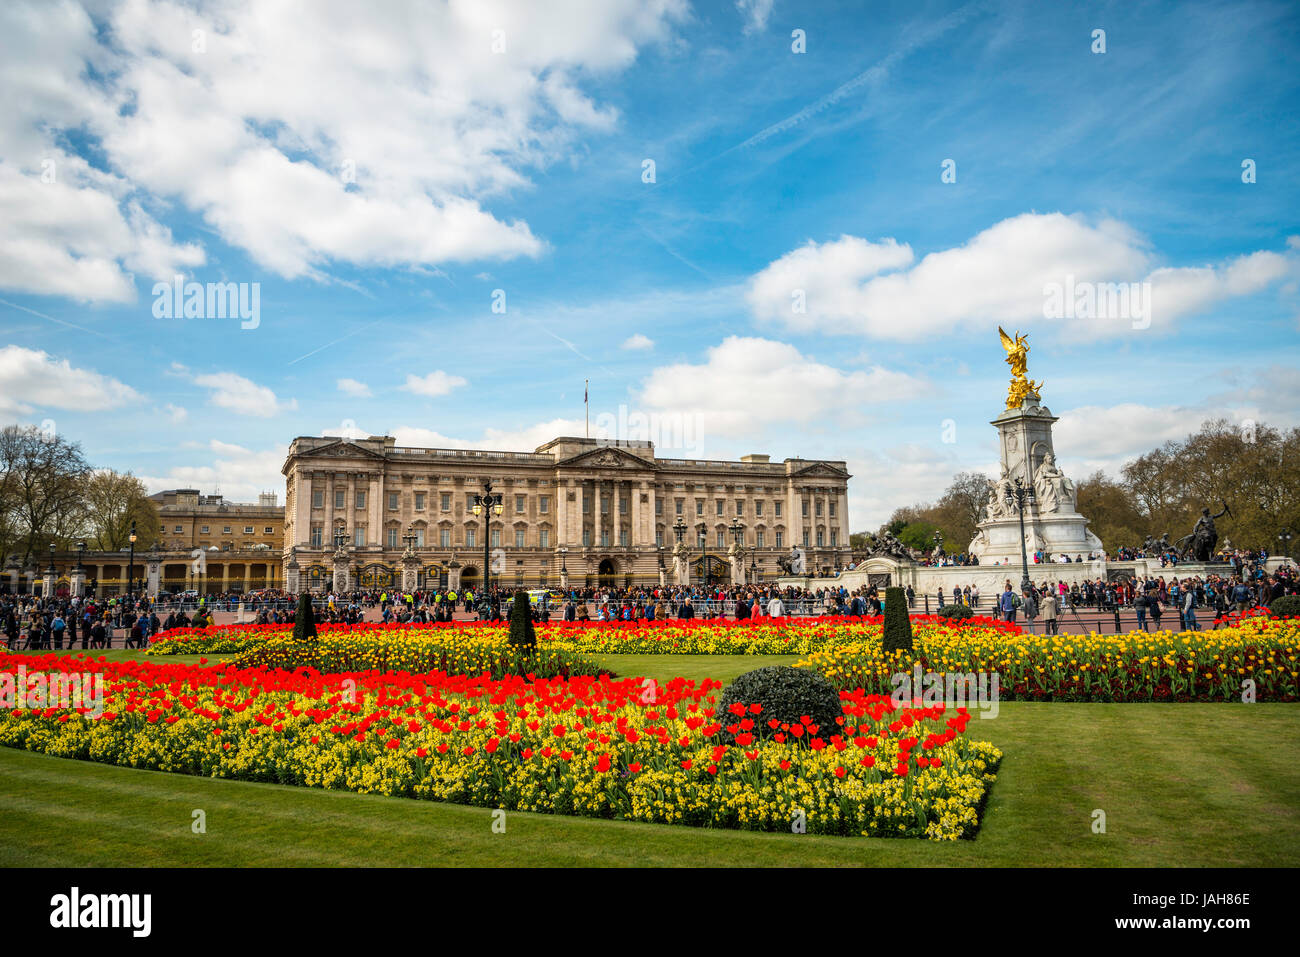 Le palais de Buckingham et du Victoria Memorial, Westminster, Londres, Angleterre, Royaume-Uni Banque D'Images